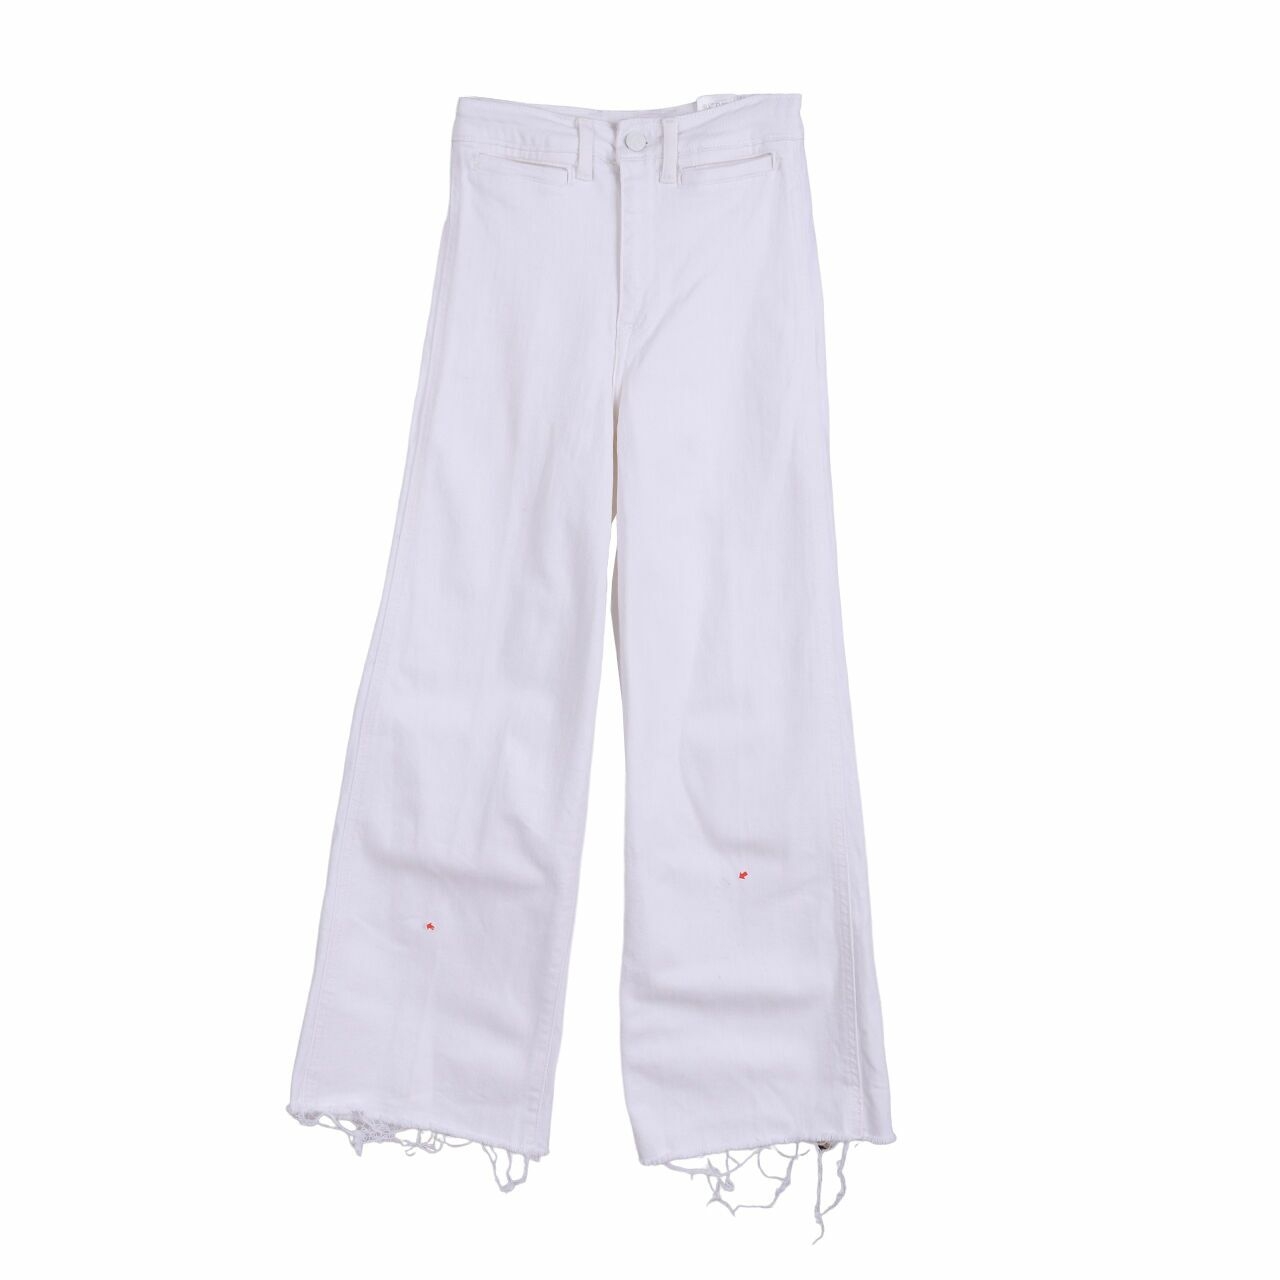 H&M White Long Pants